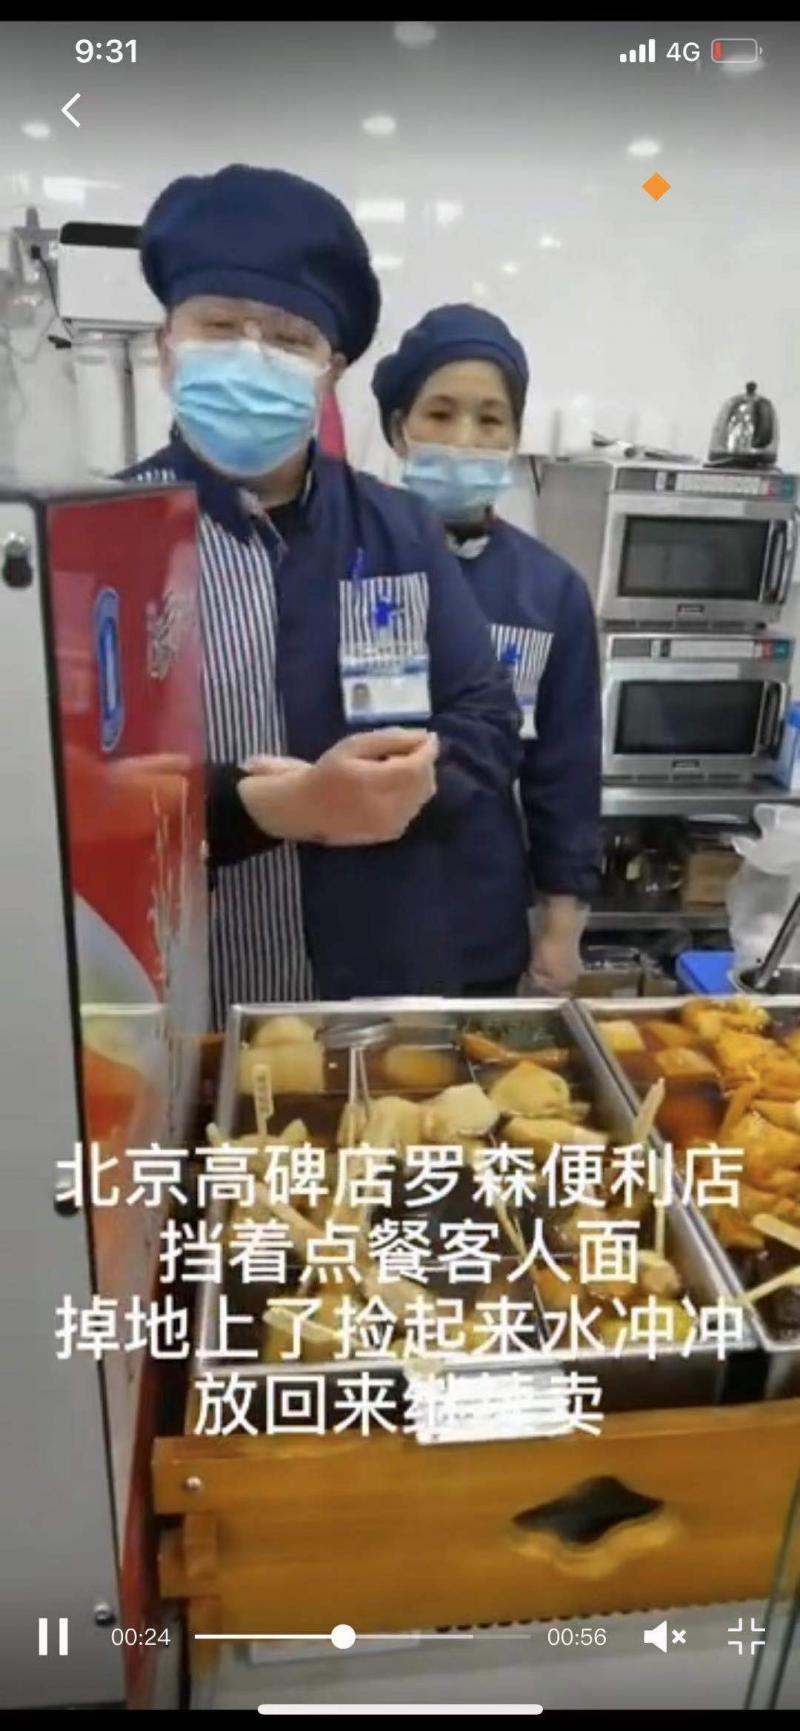 北京一罗森便利店食物掉地上冲水继续卖 尚未回应